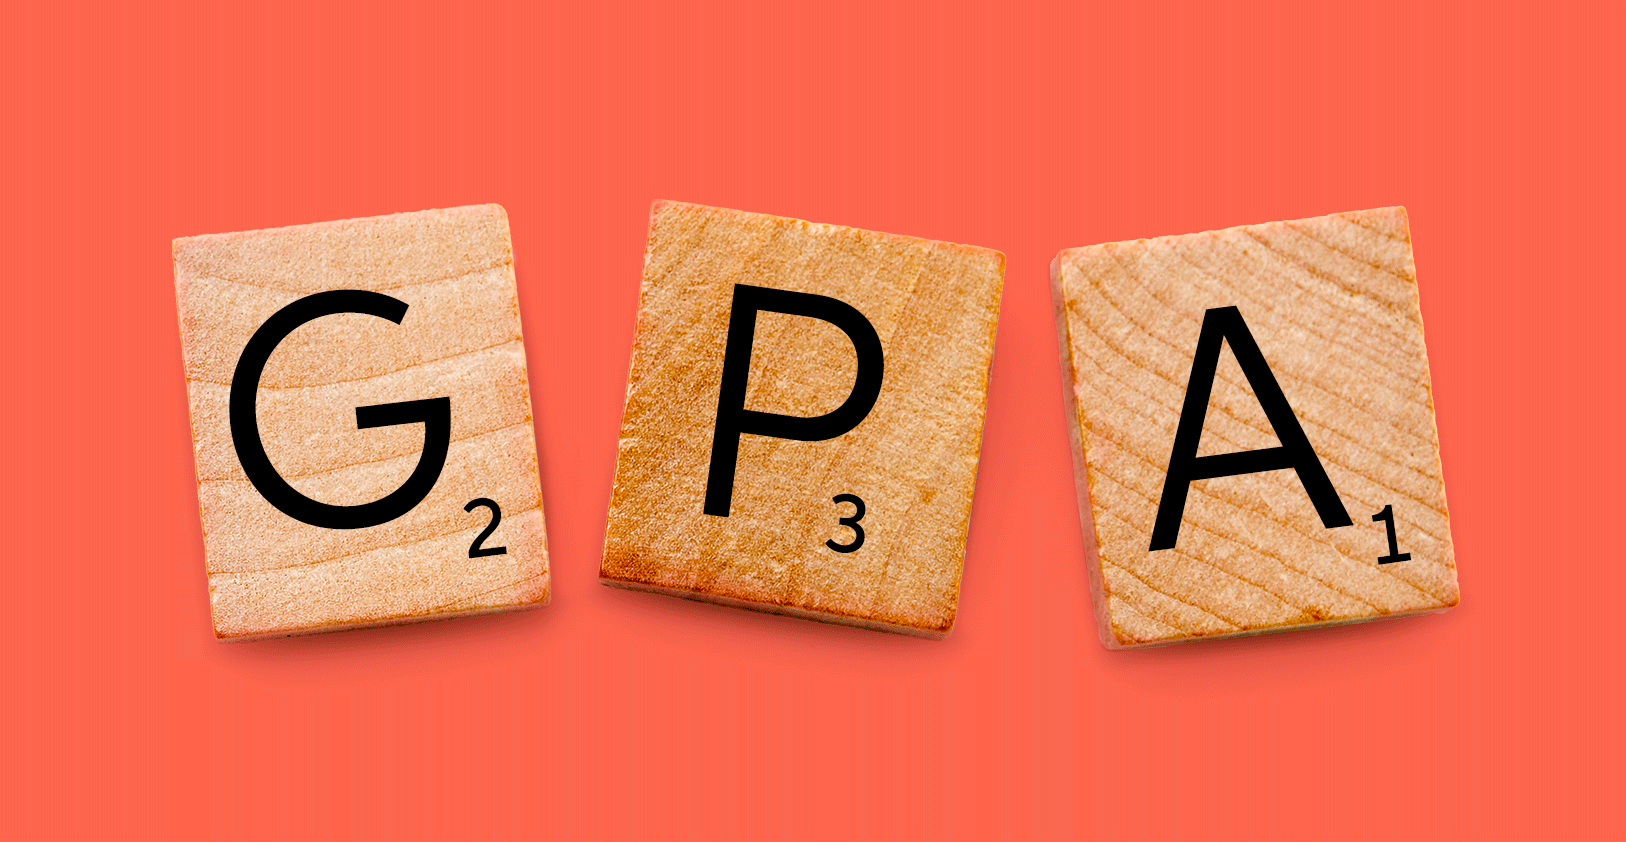 GPA là viết tắt của điểm trung bình